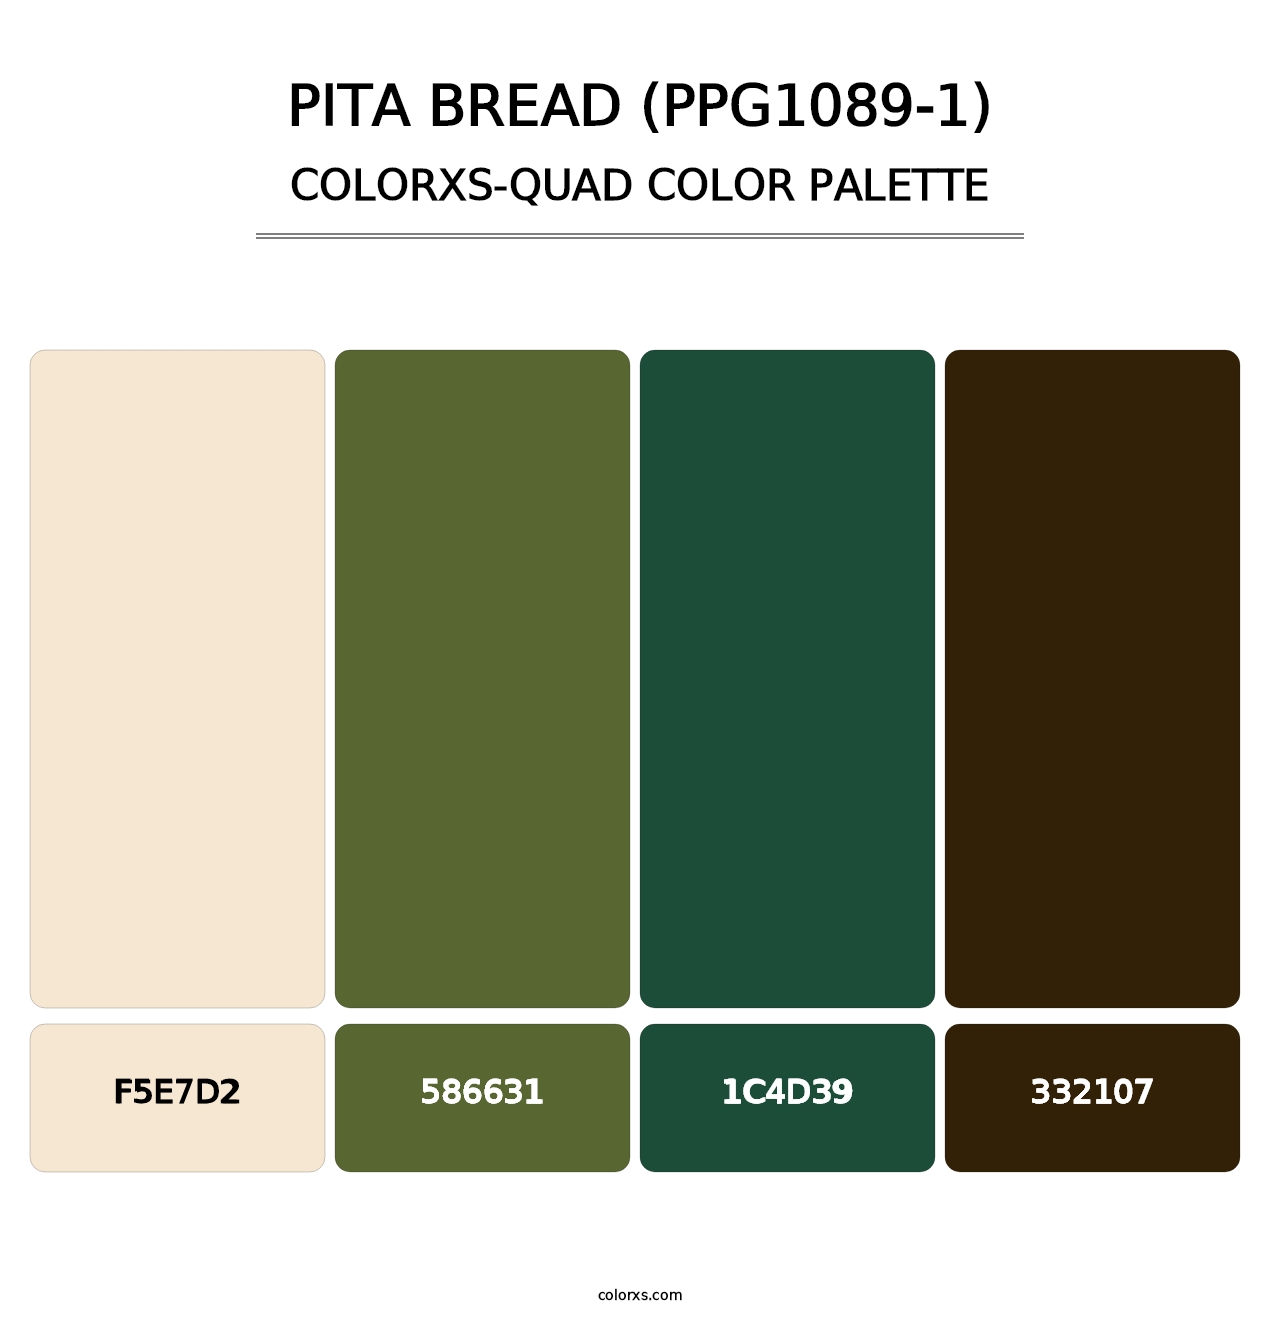 Pita Bread (PPG1089-1) - Colorxs Quad Palette